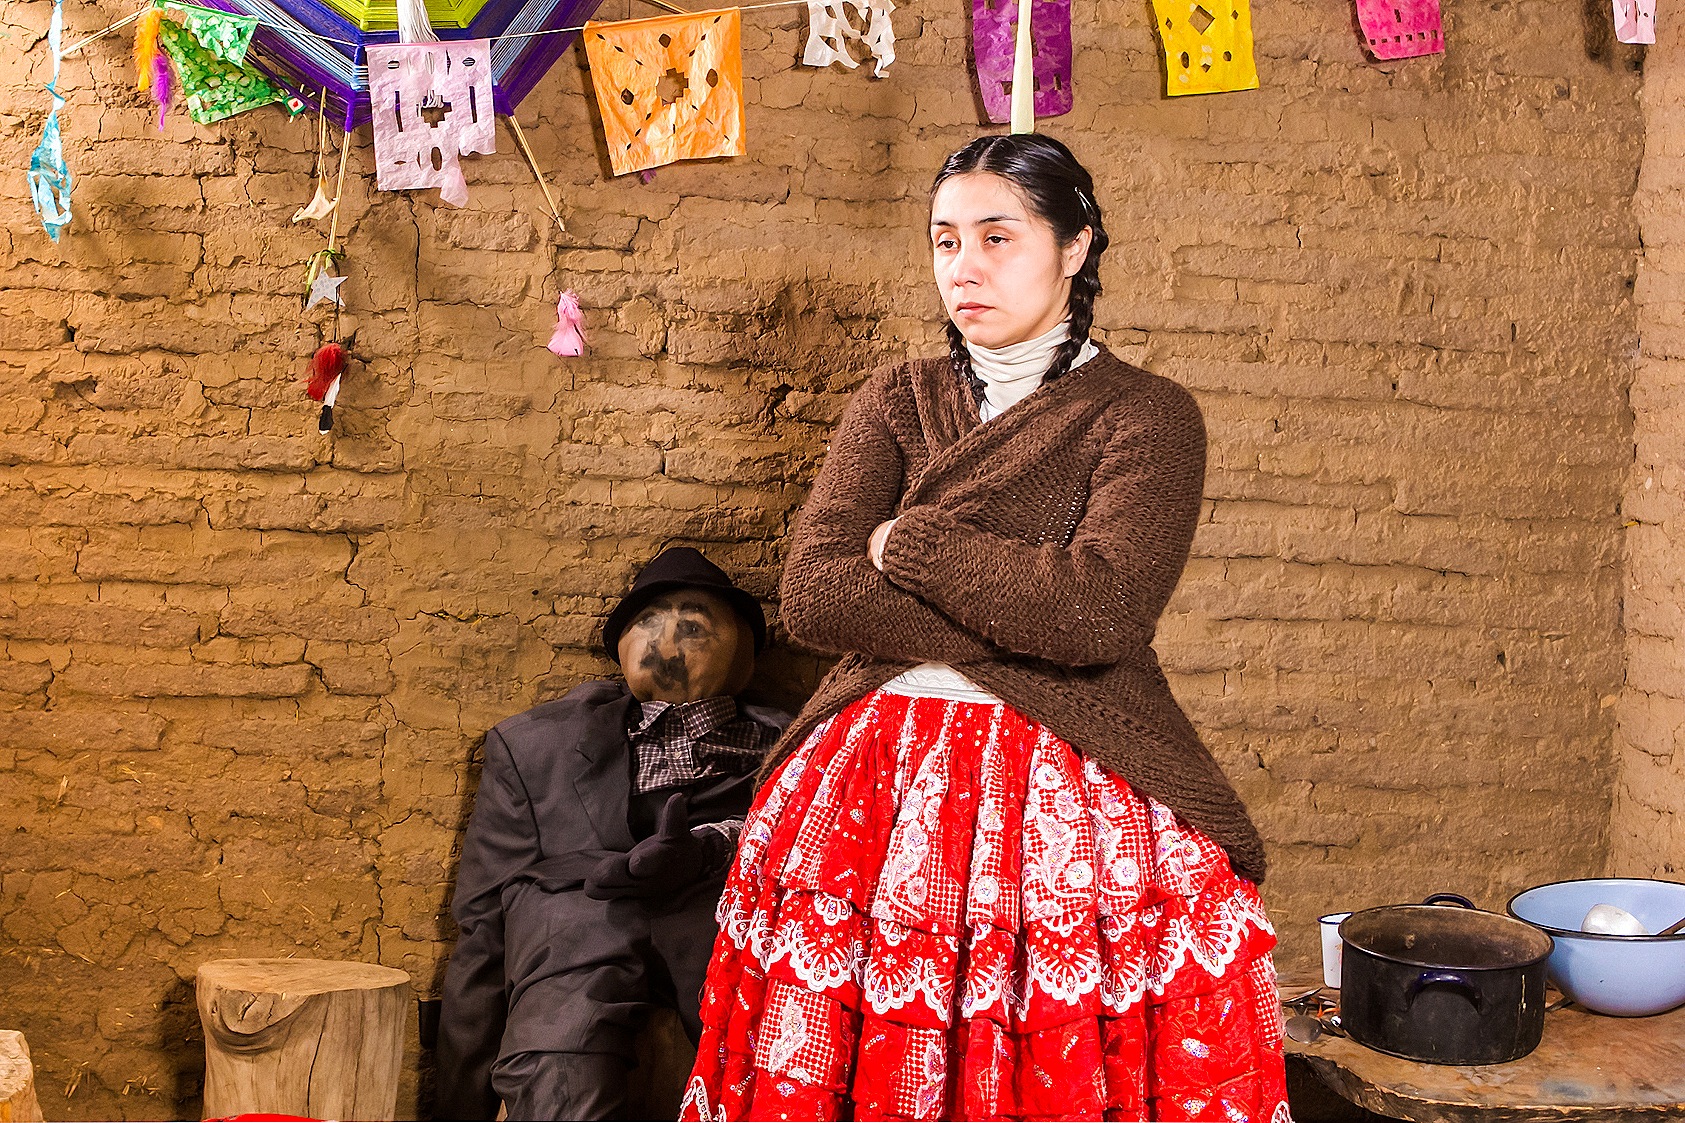 El caso de la pastora Aymara Gabriela Blas llega al teatro con «Alcérrreca, tragedia en el altiplano»